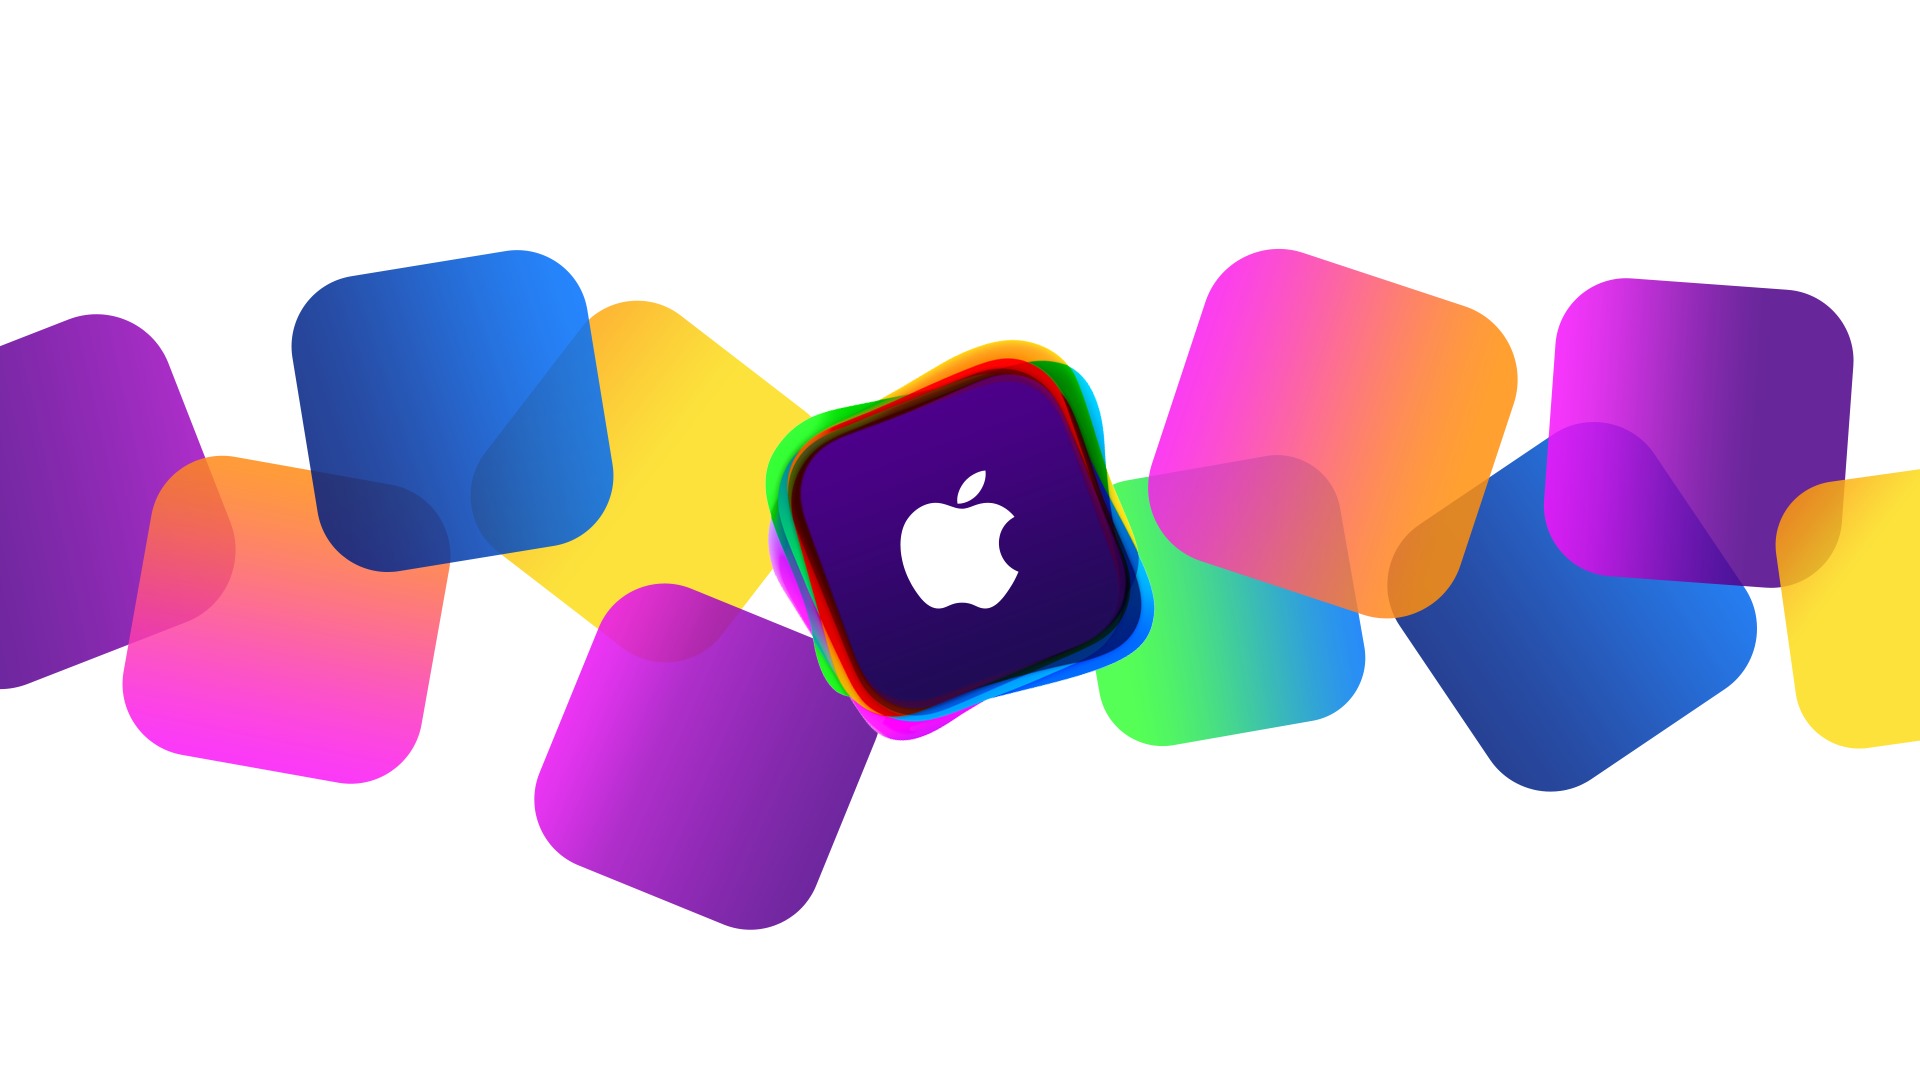 Apple Wallpapers Hd Free Download - Wwdc Apple Logo Wallpaper Hd - HD Wallpaper 